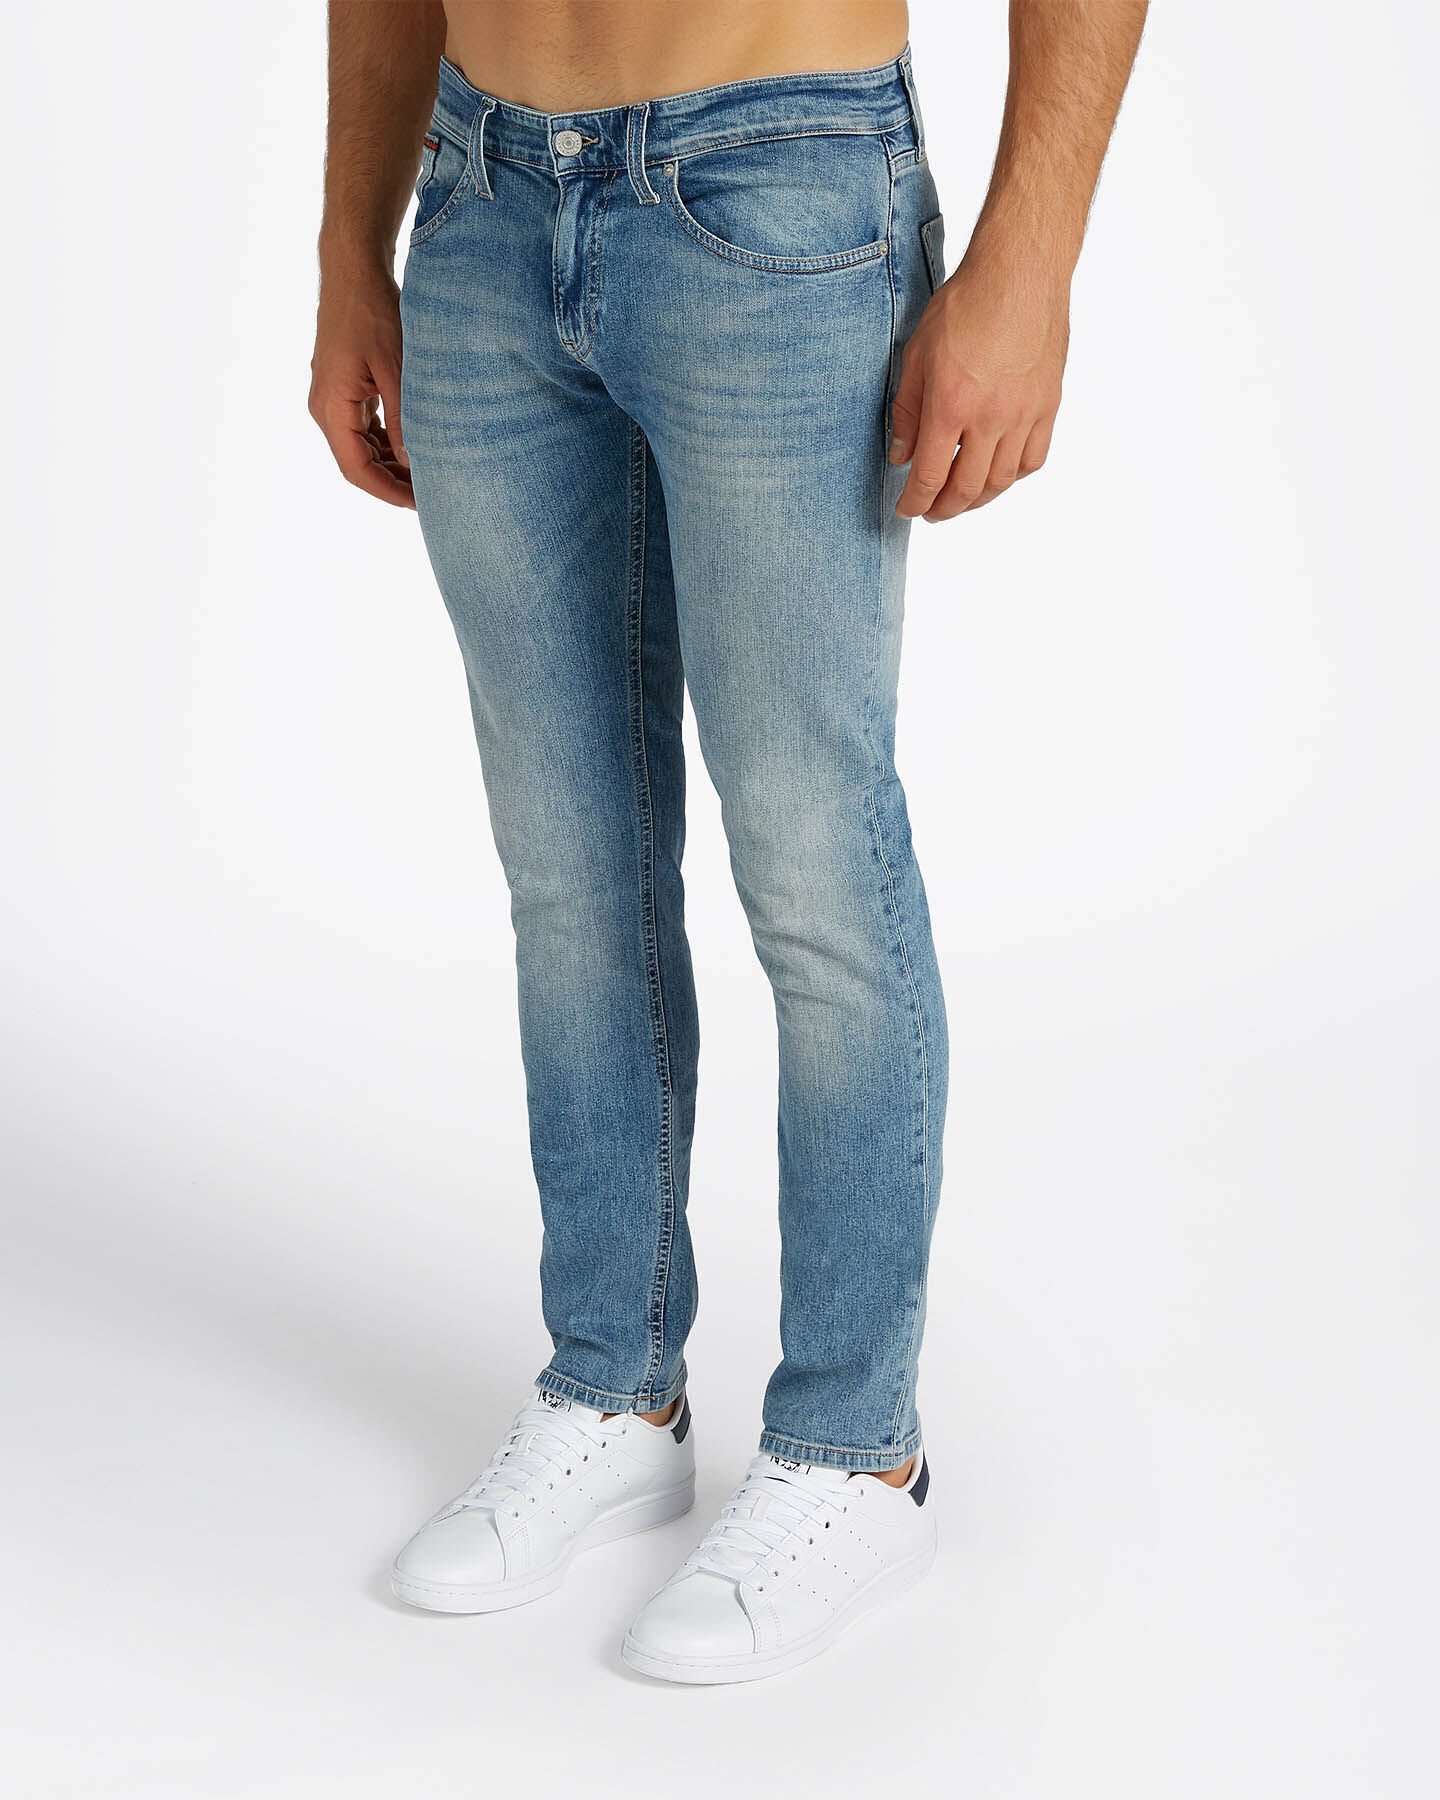 Jeans SCANTON ABOUT YOU Uomo Abbigliamento Pantaloni e jeans Jeans Jeans slim & sigaretta 